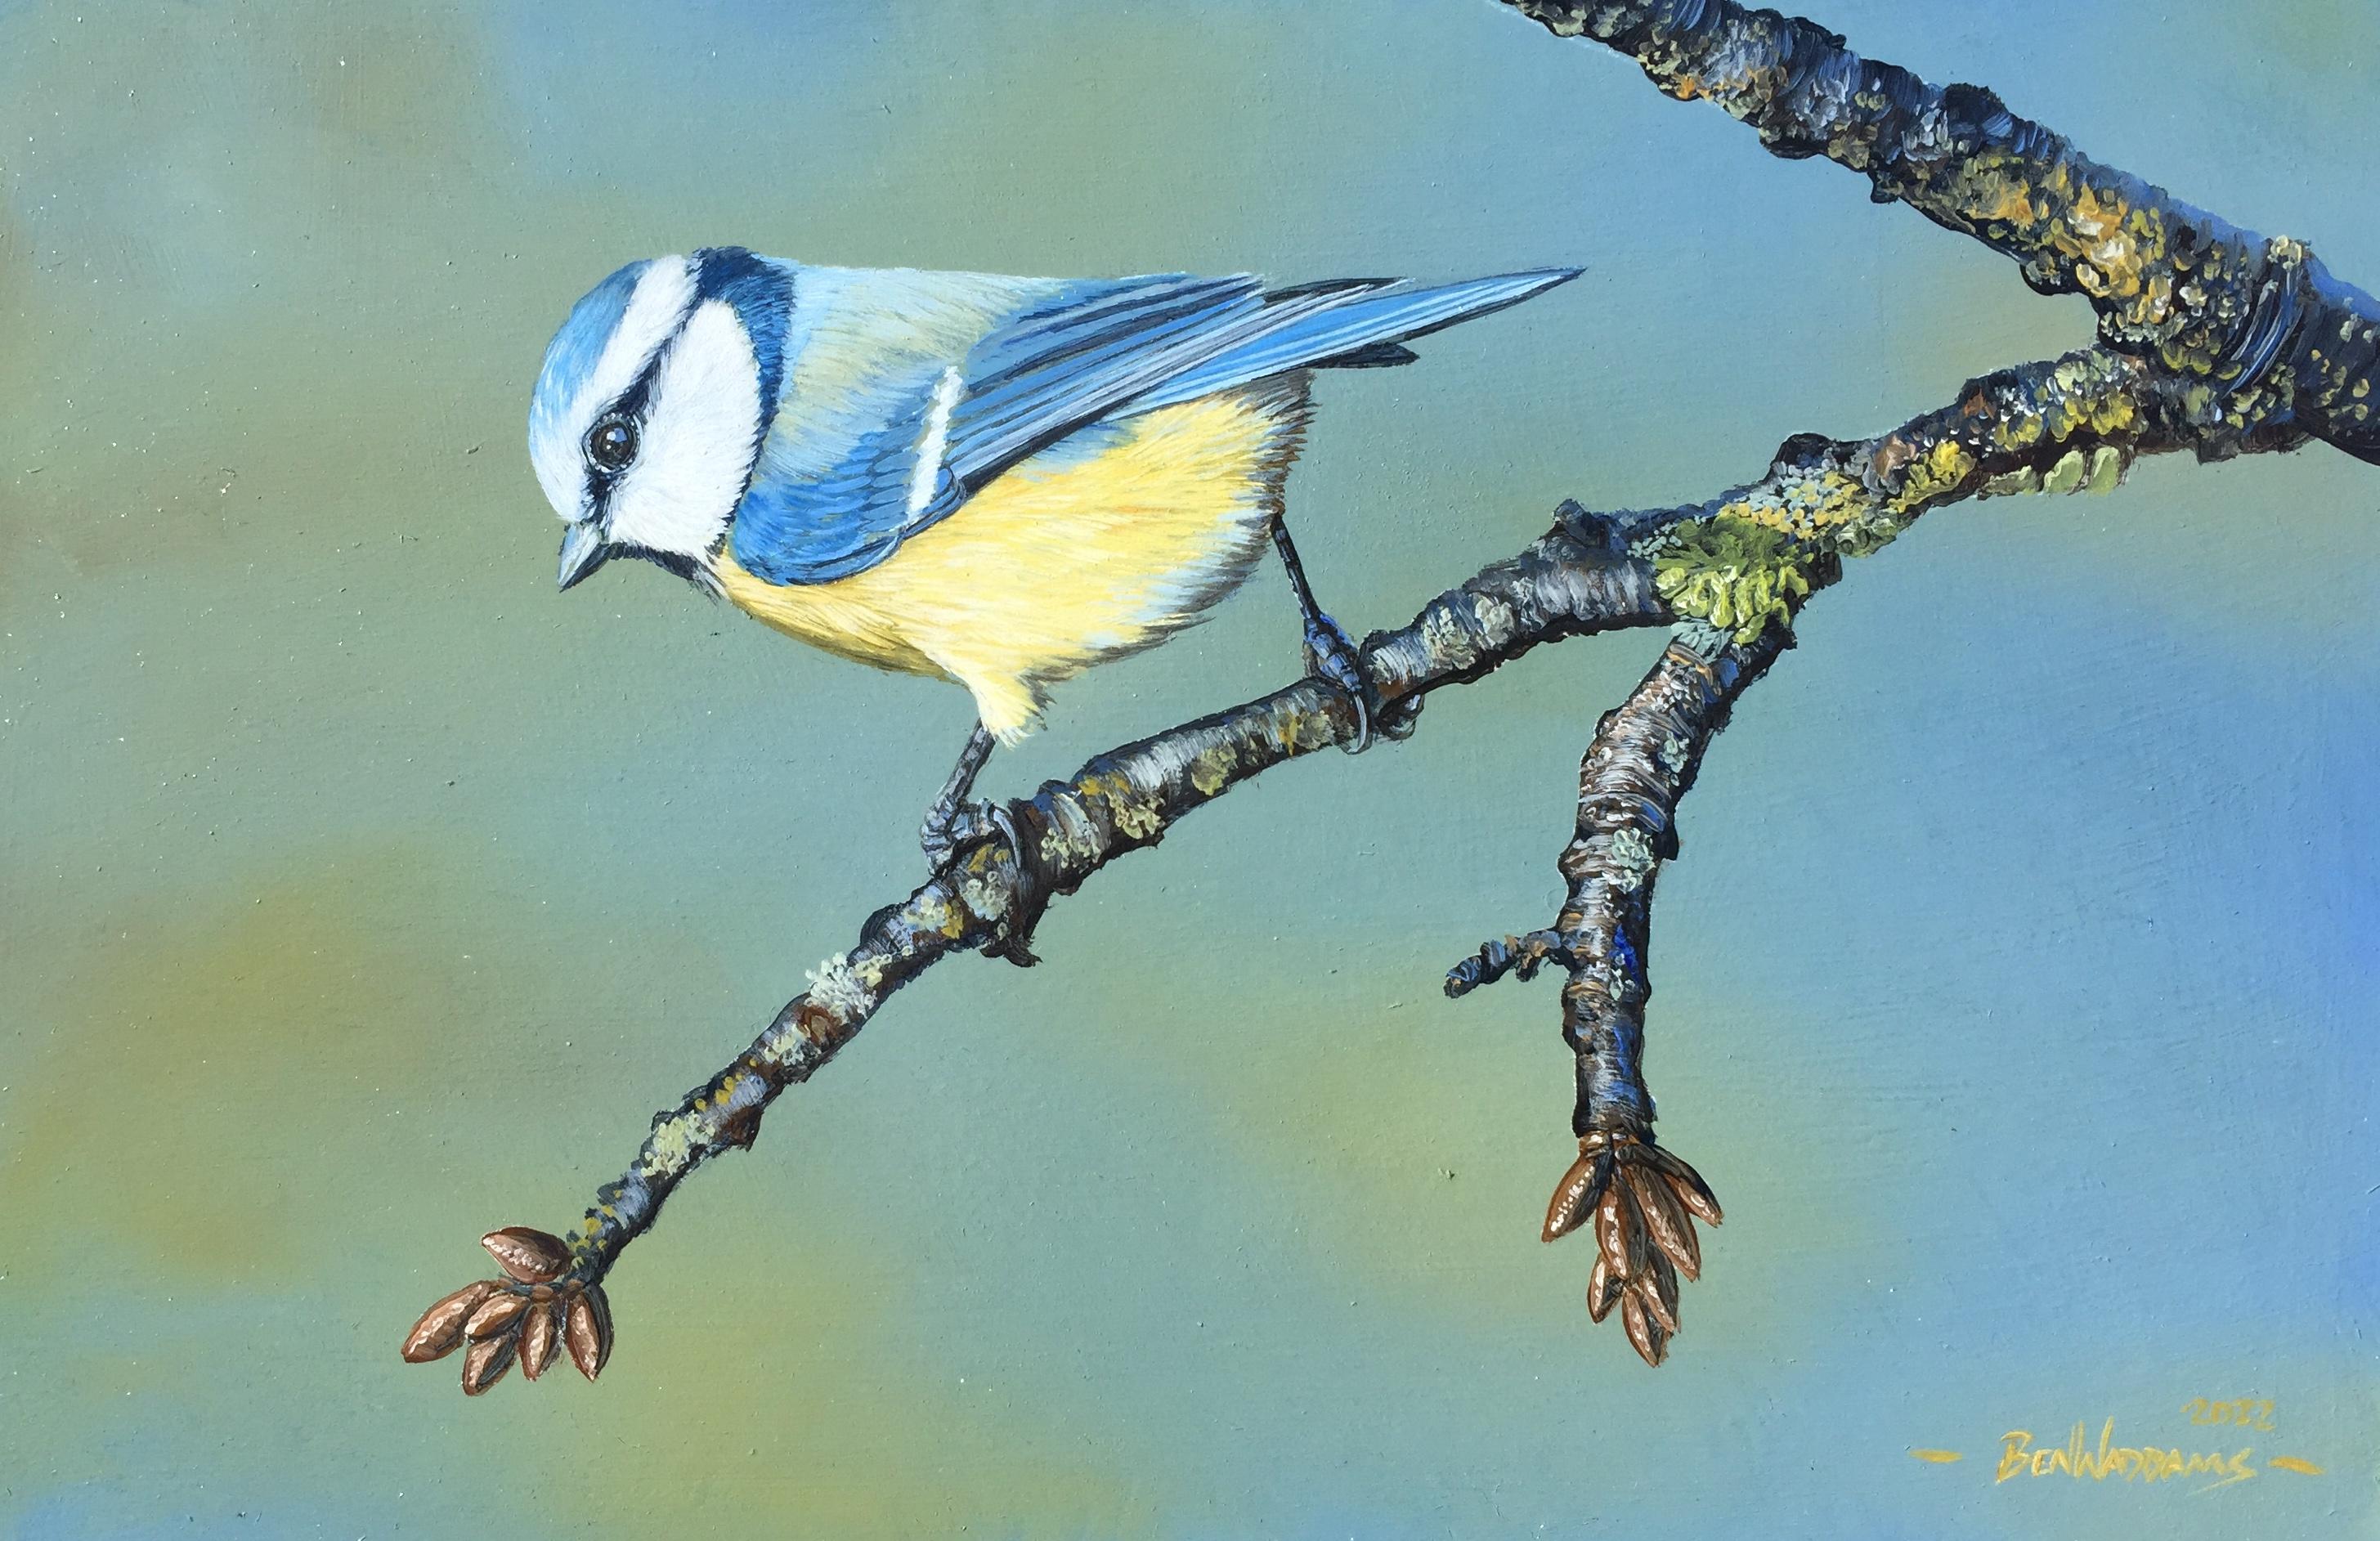 Frühlingsverheißung" Zeitgenössisches Gemälde eines Blaumeisenvogels auf einem Branch, gelb